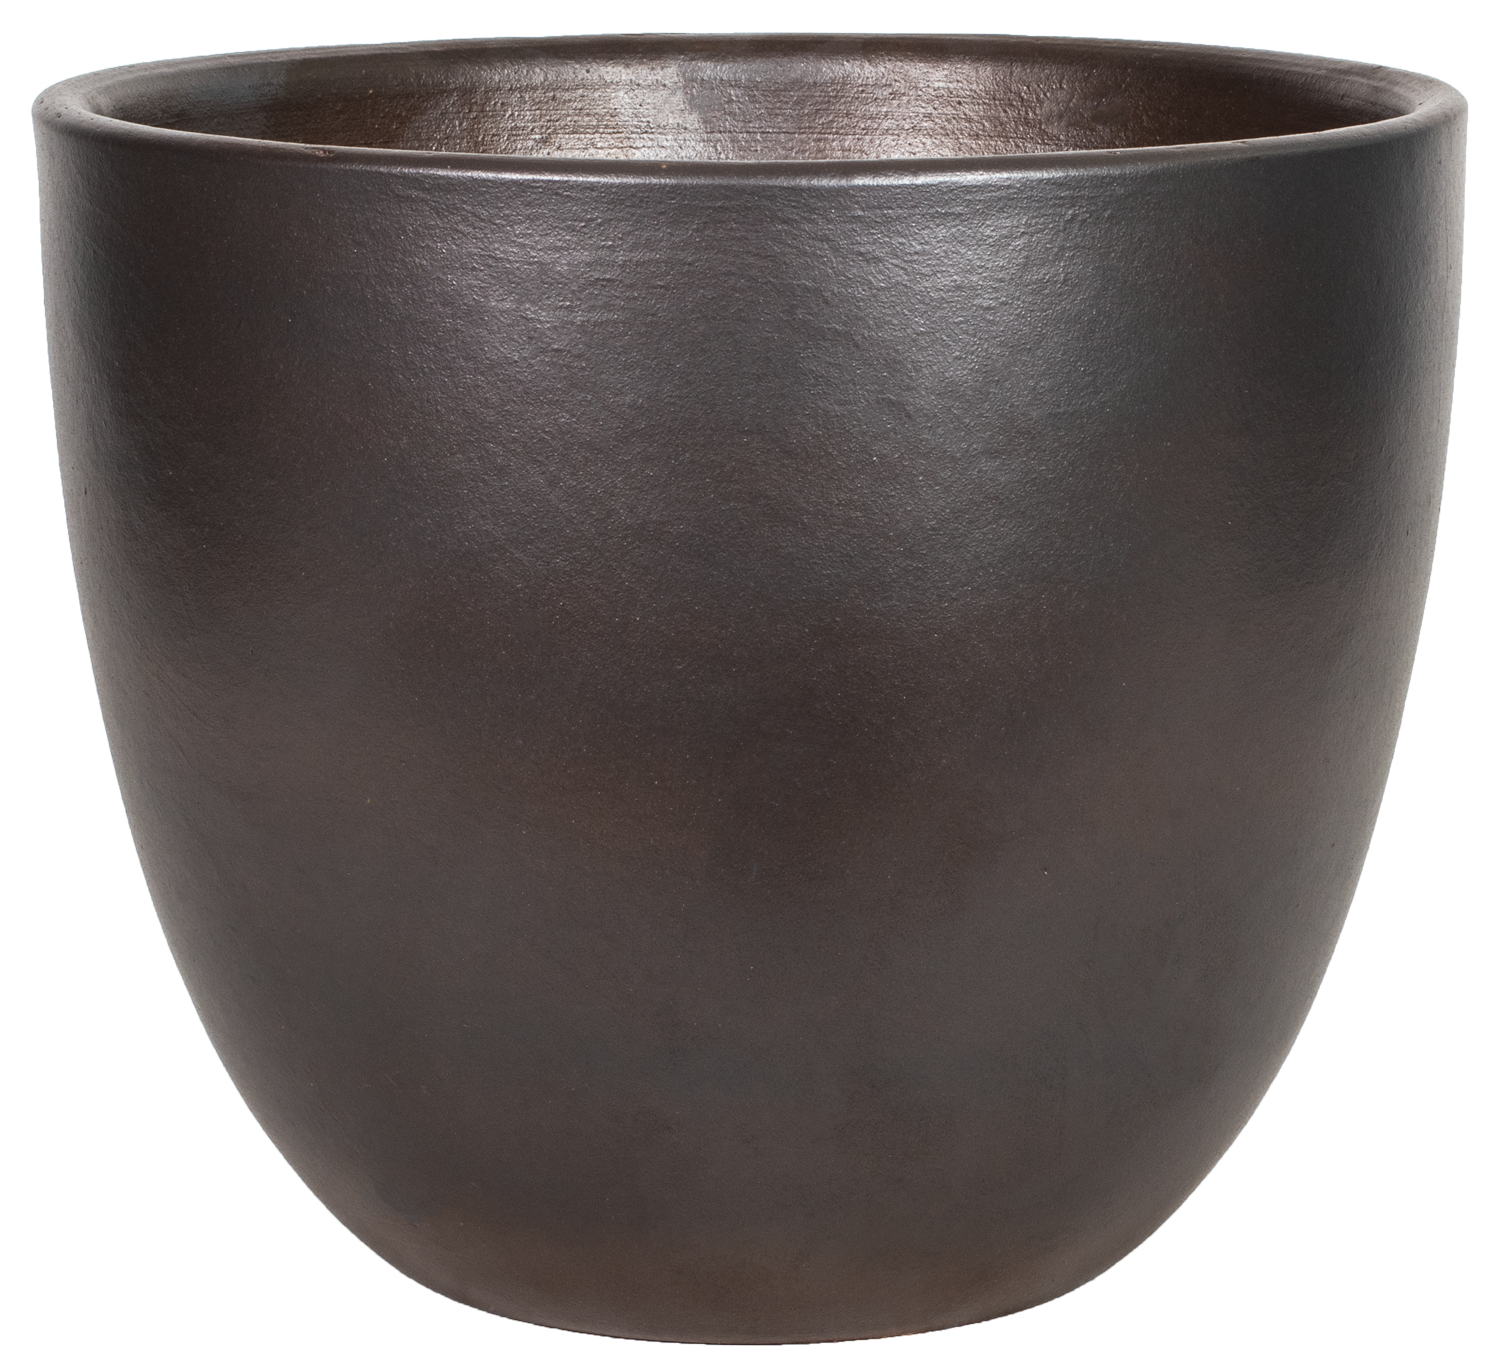 simple modern round egg planter in brown glaze